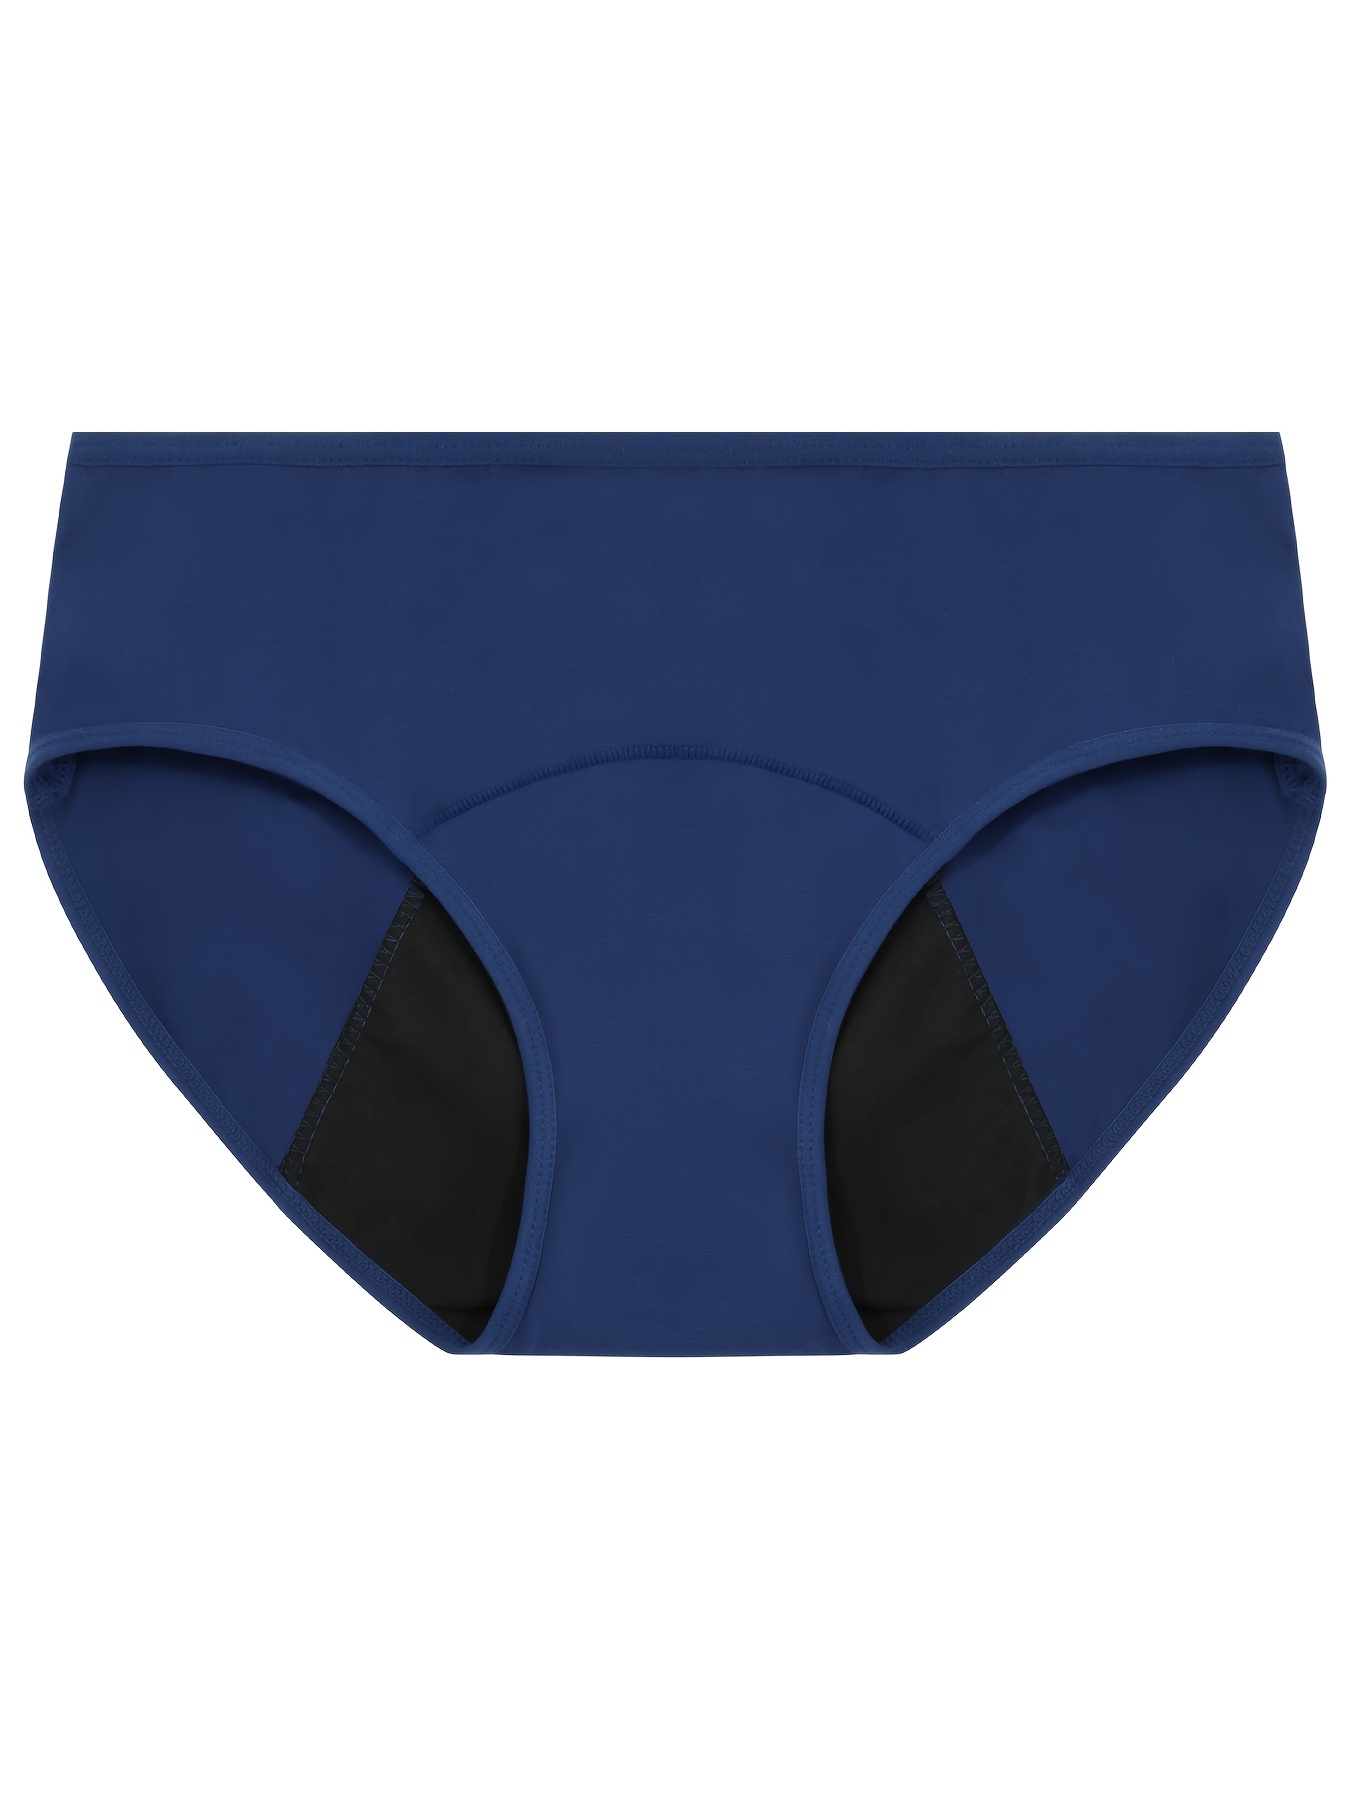 ⭕️ Period Underwear UAE ⭕️  ⭕️ Period Underwear in UAE